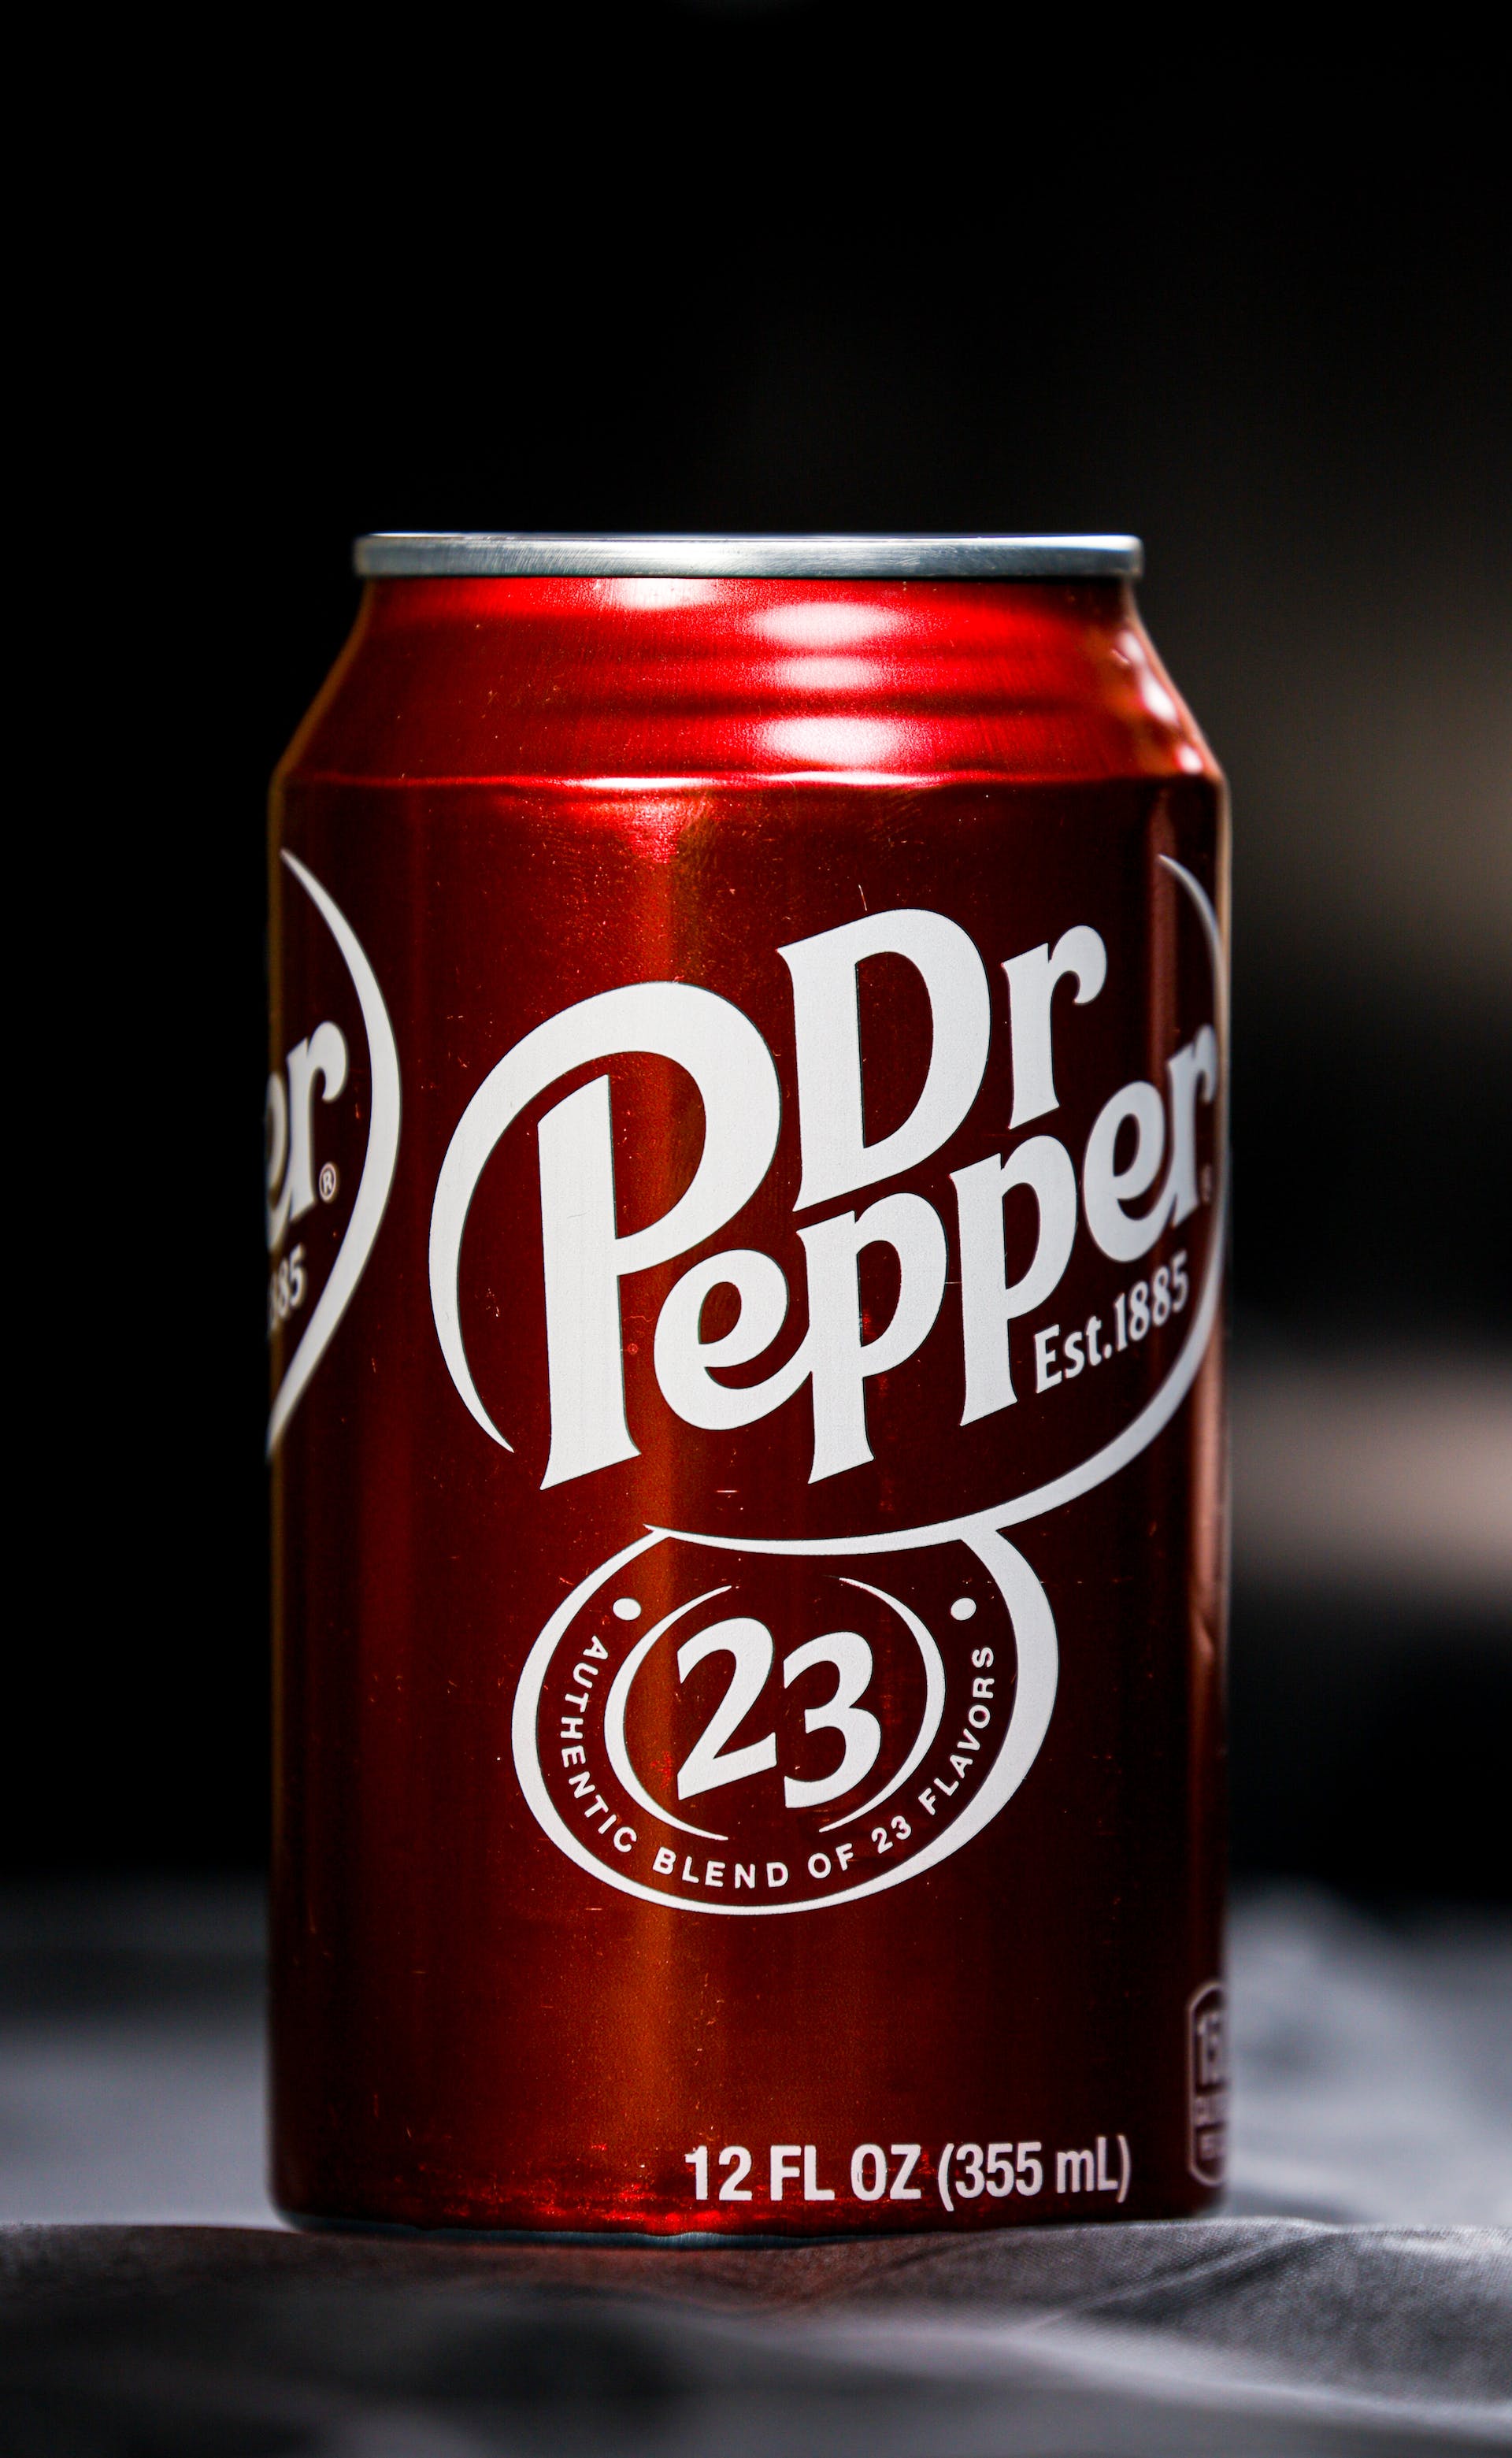 A close-up of Dr. Pepper | Source: Pexels